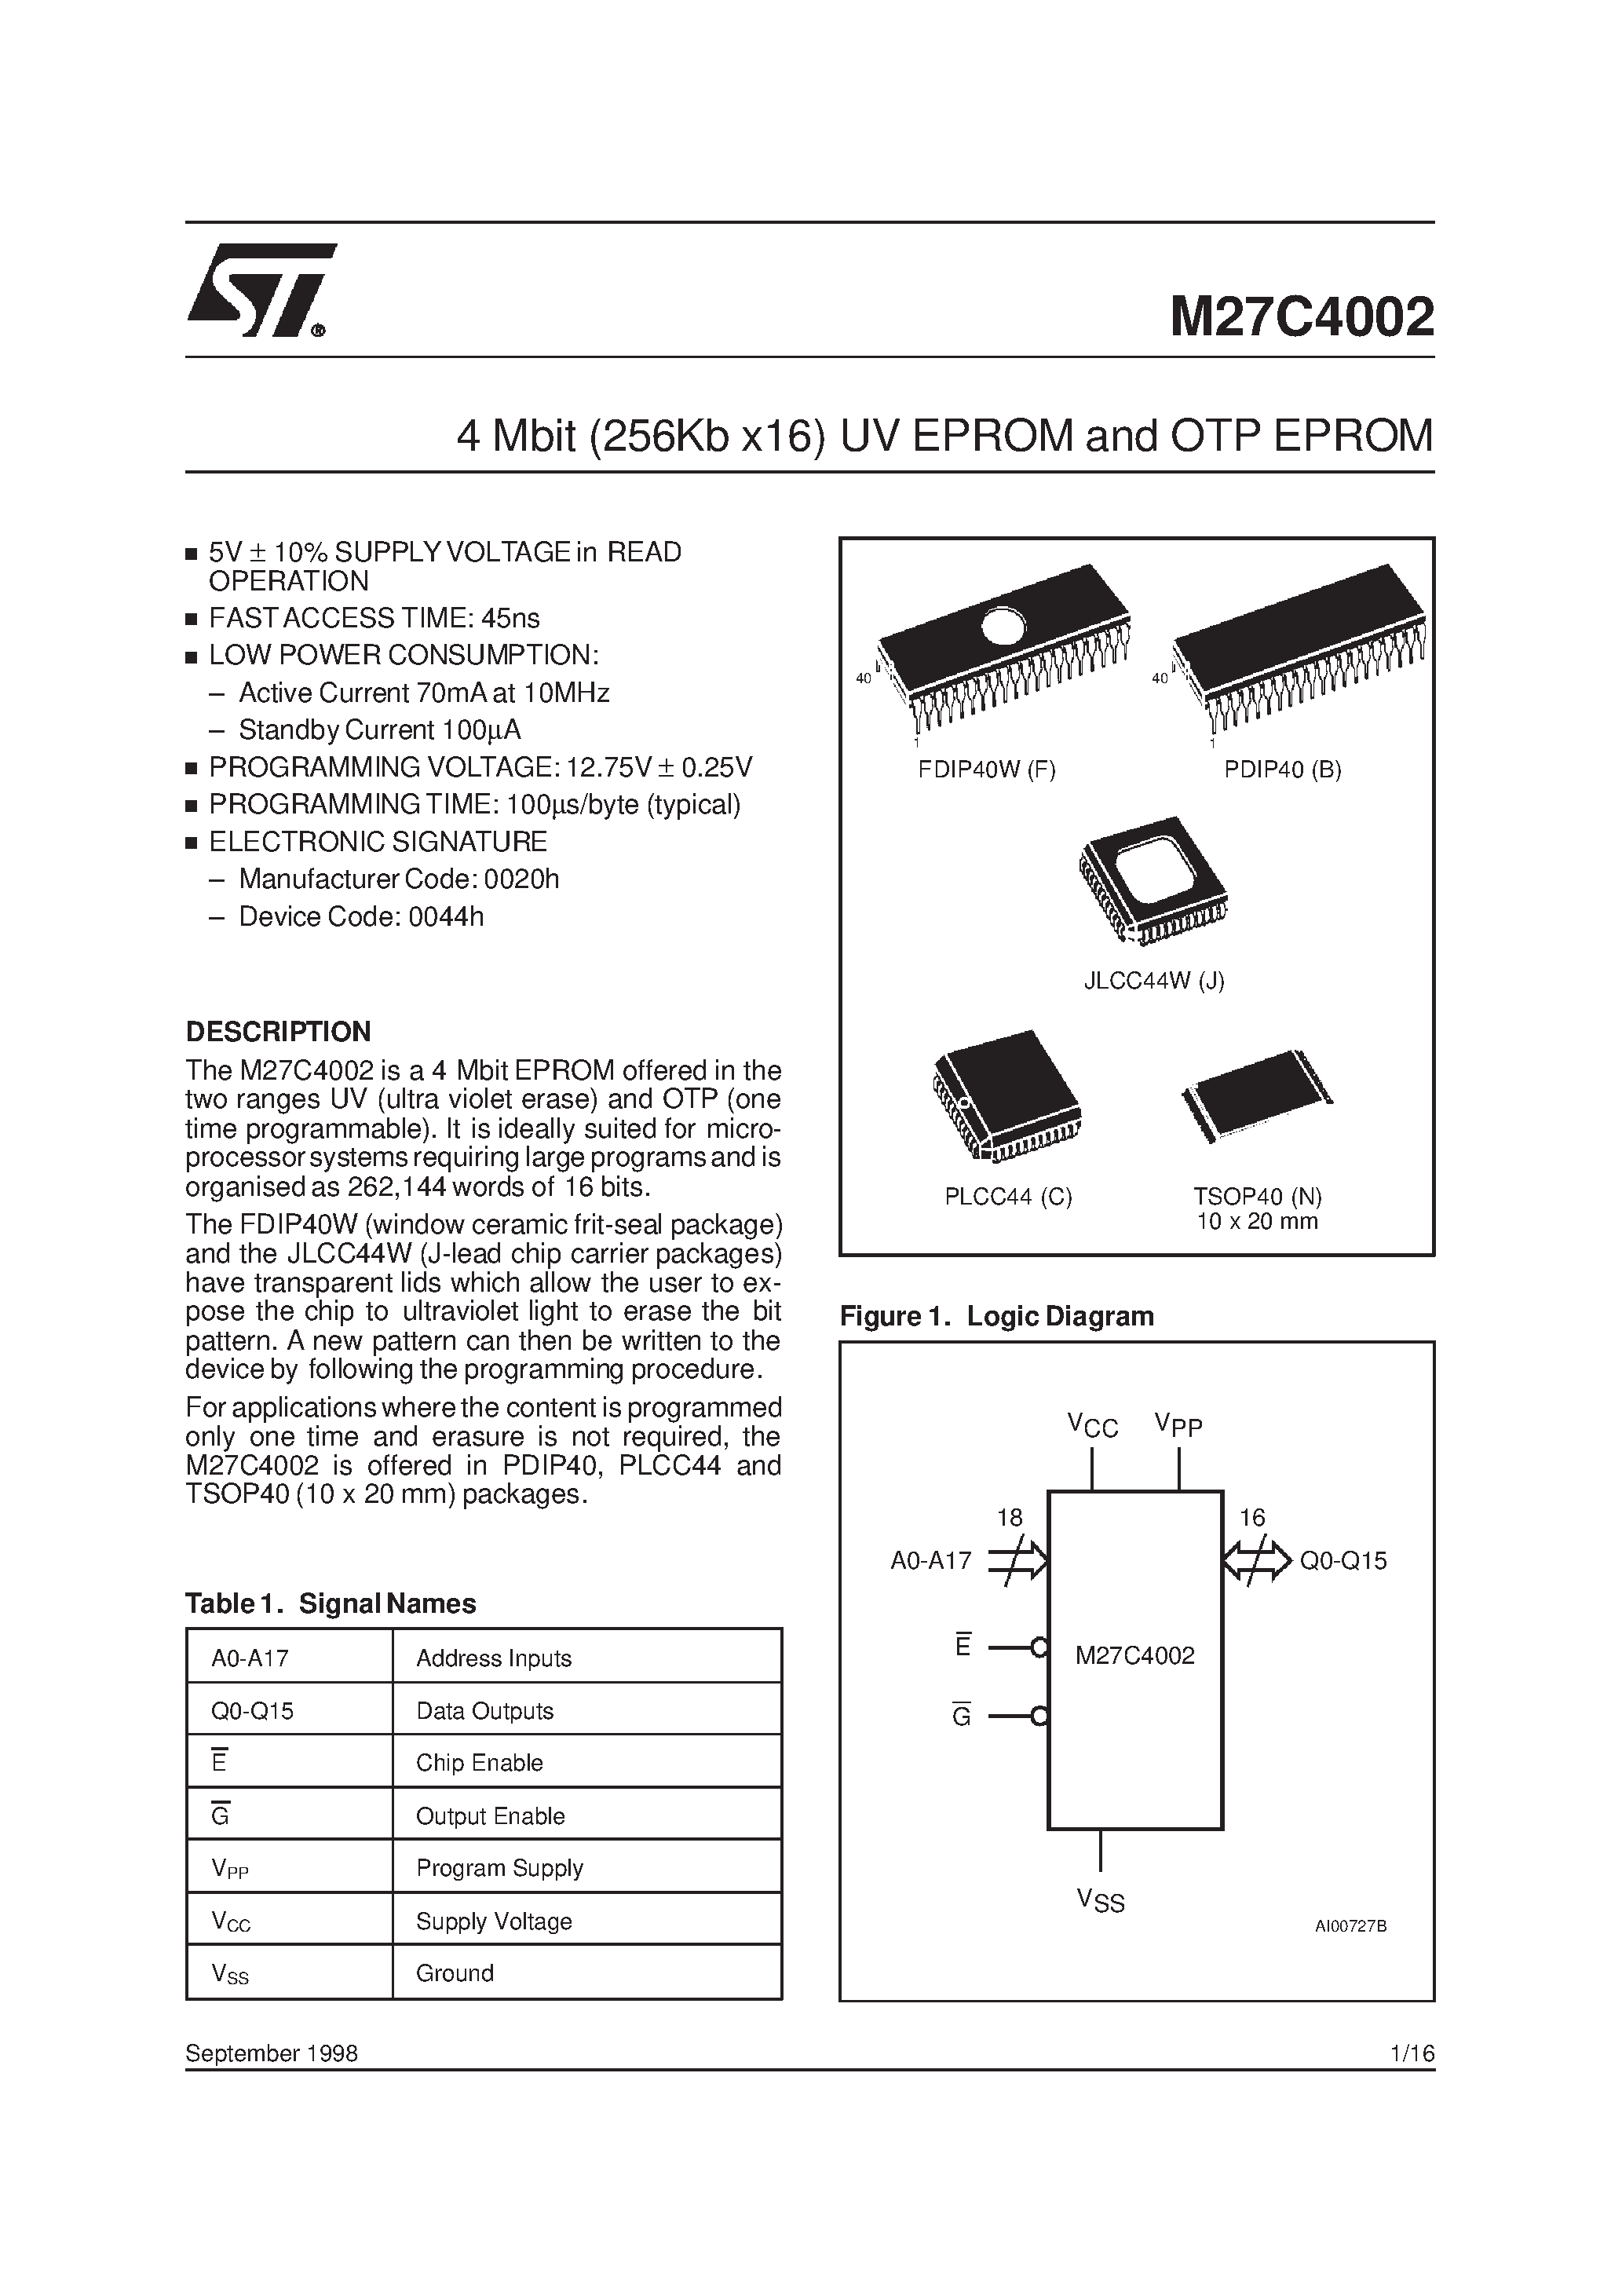 Datasheet M27C4002-10XB1TR - 4 Mbit 256Kb x16 UV EPROM and OTP EPROM page 1